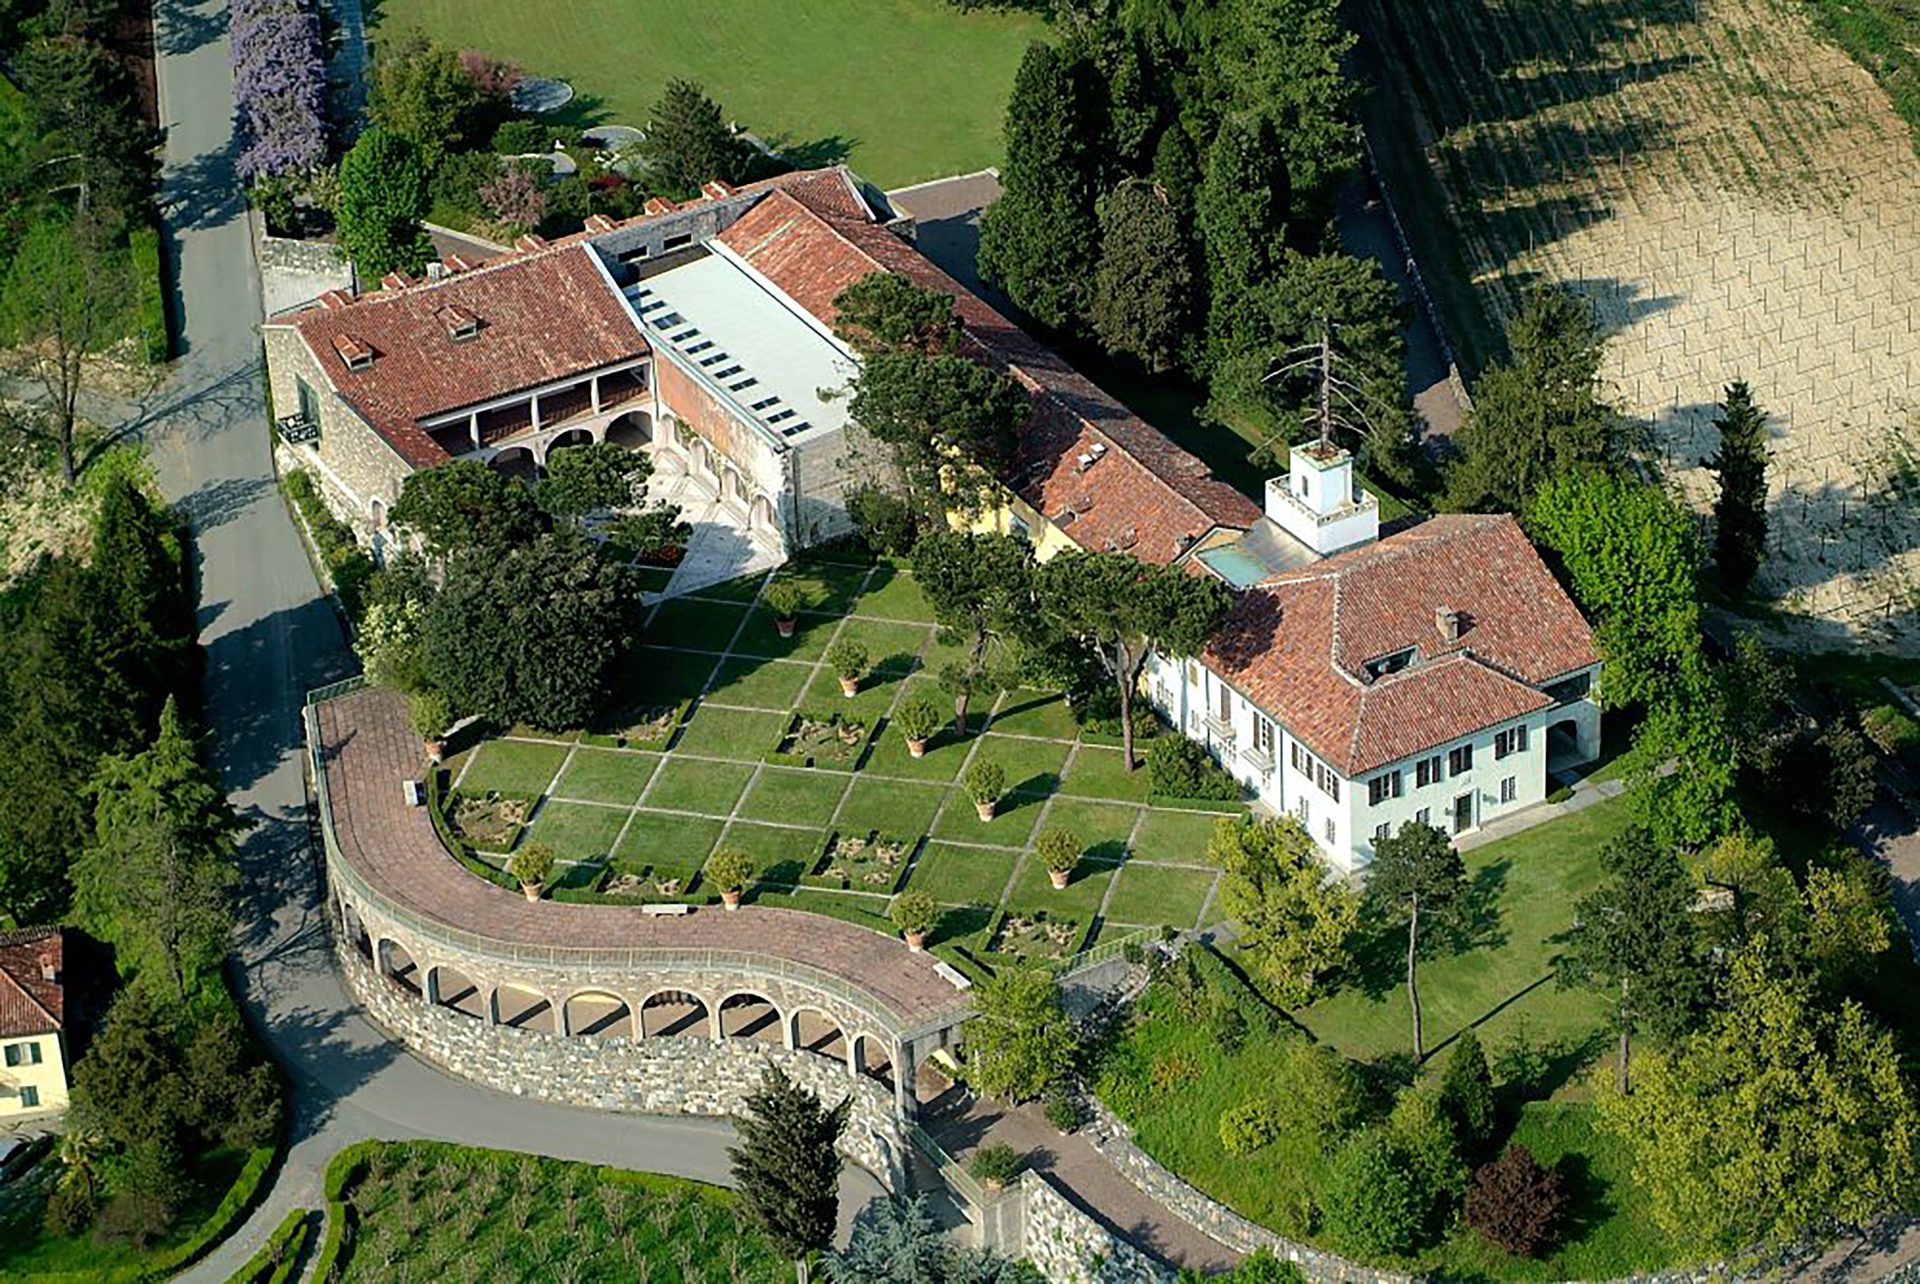 Panoramica dall'alto di Villa Ottolenghi Wedekind